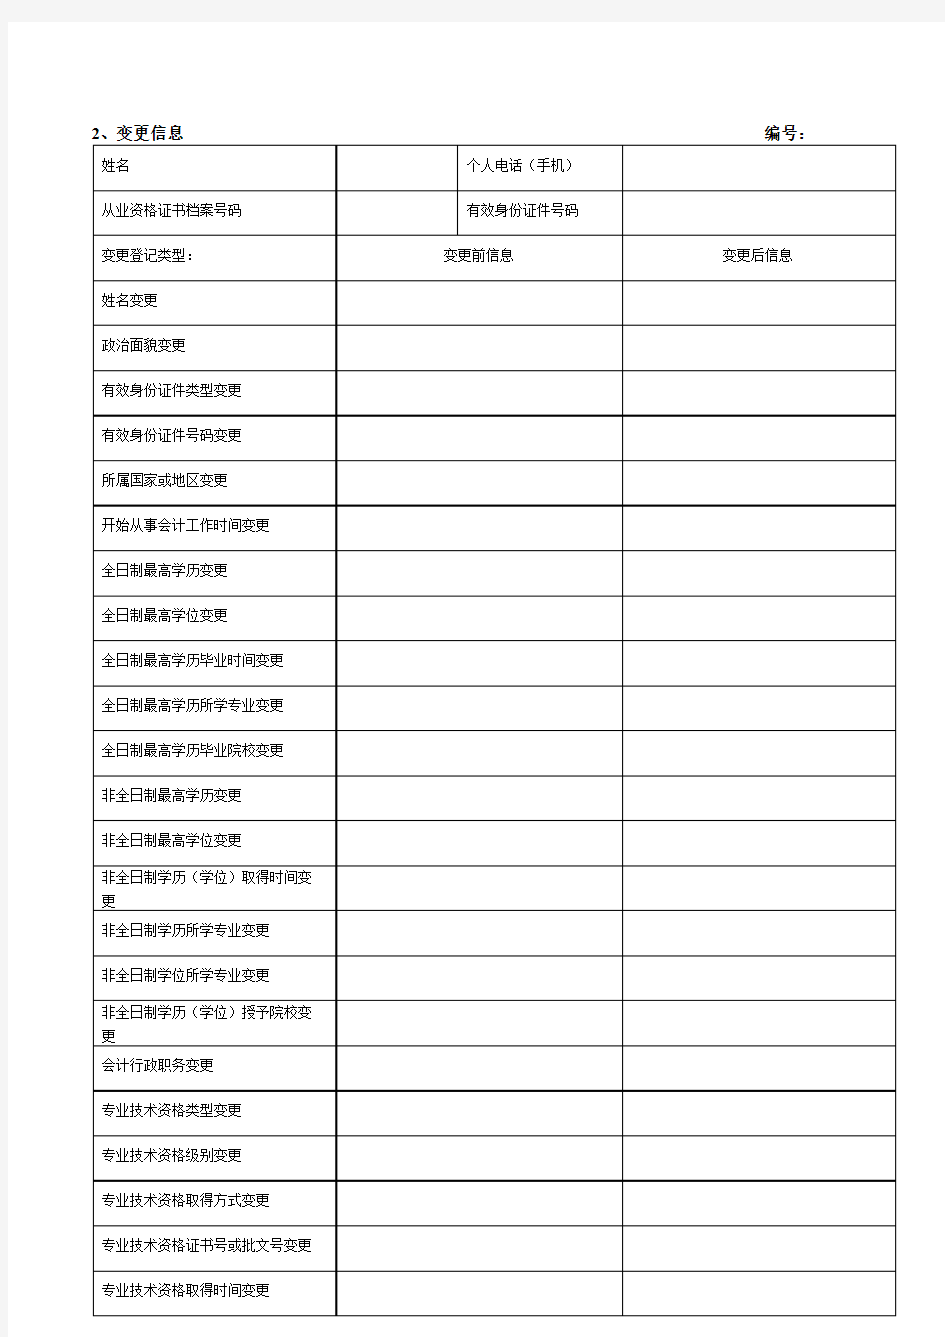 安徽省会计从业人员基本信息表